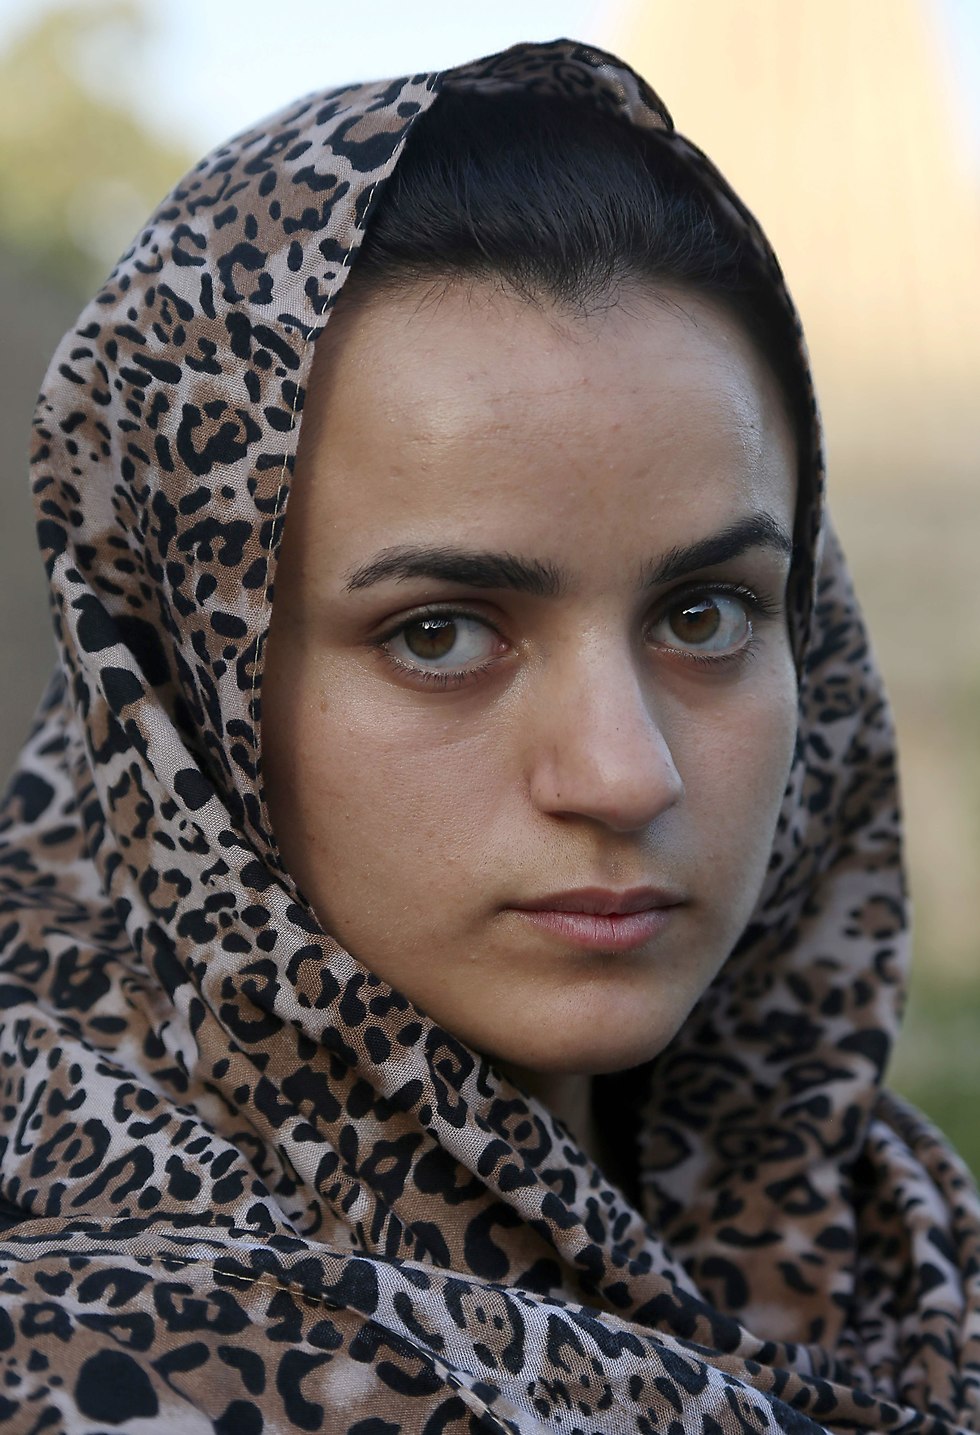 אשוואק חאג'י, צעירה יזידית שנמלטה מדאעש לגרמניה - ופגשה שם את החוטף שלה. צולם במקדש יזידי בלאלש שליד מוסול בעיראק (צילום: AFP)